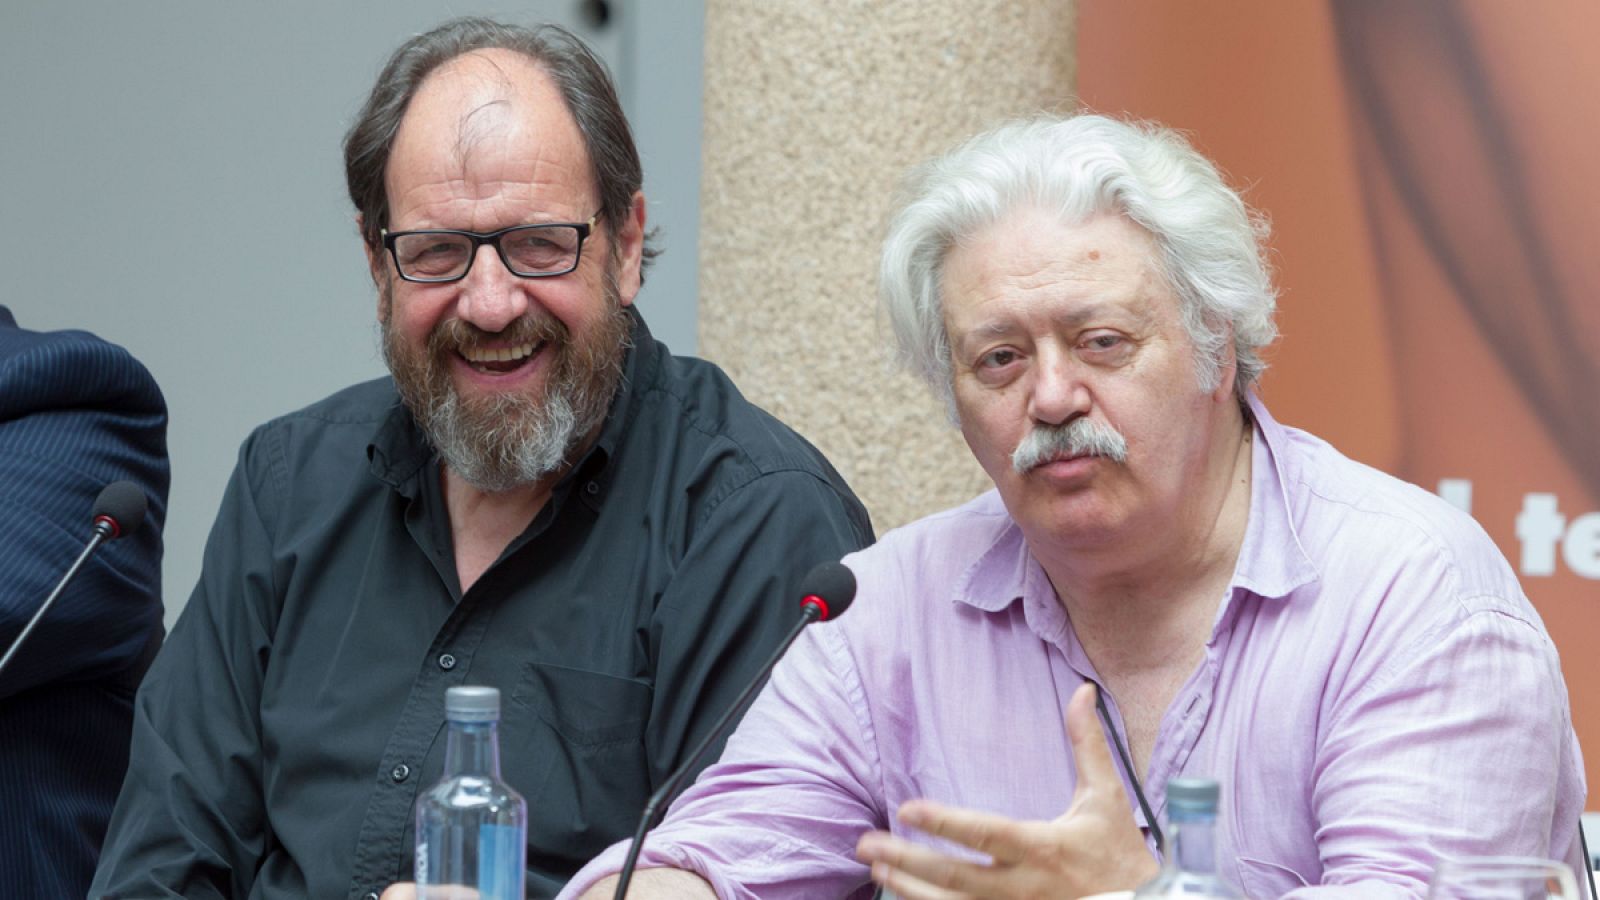 El director Mario Gas y el actor José María Pou presentan la obra "Sócrates, juicio y muerte de un ciudadano"